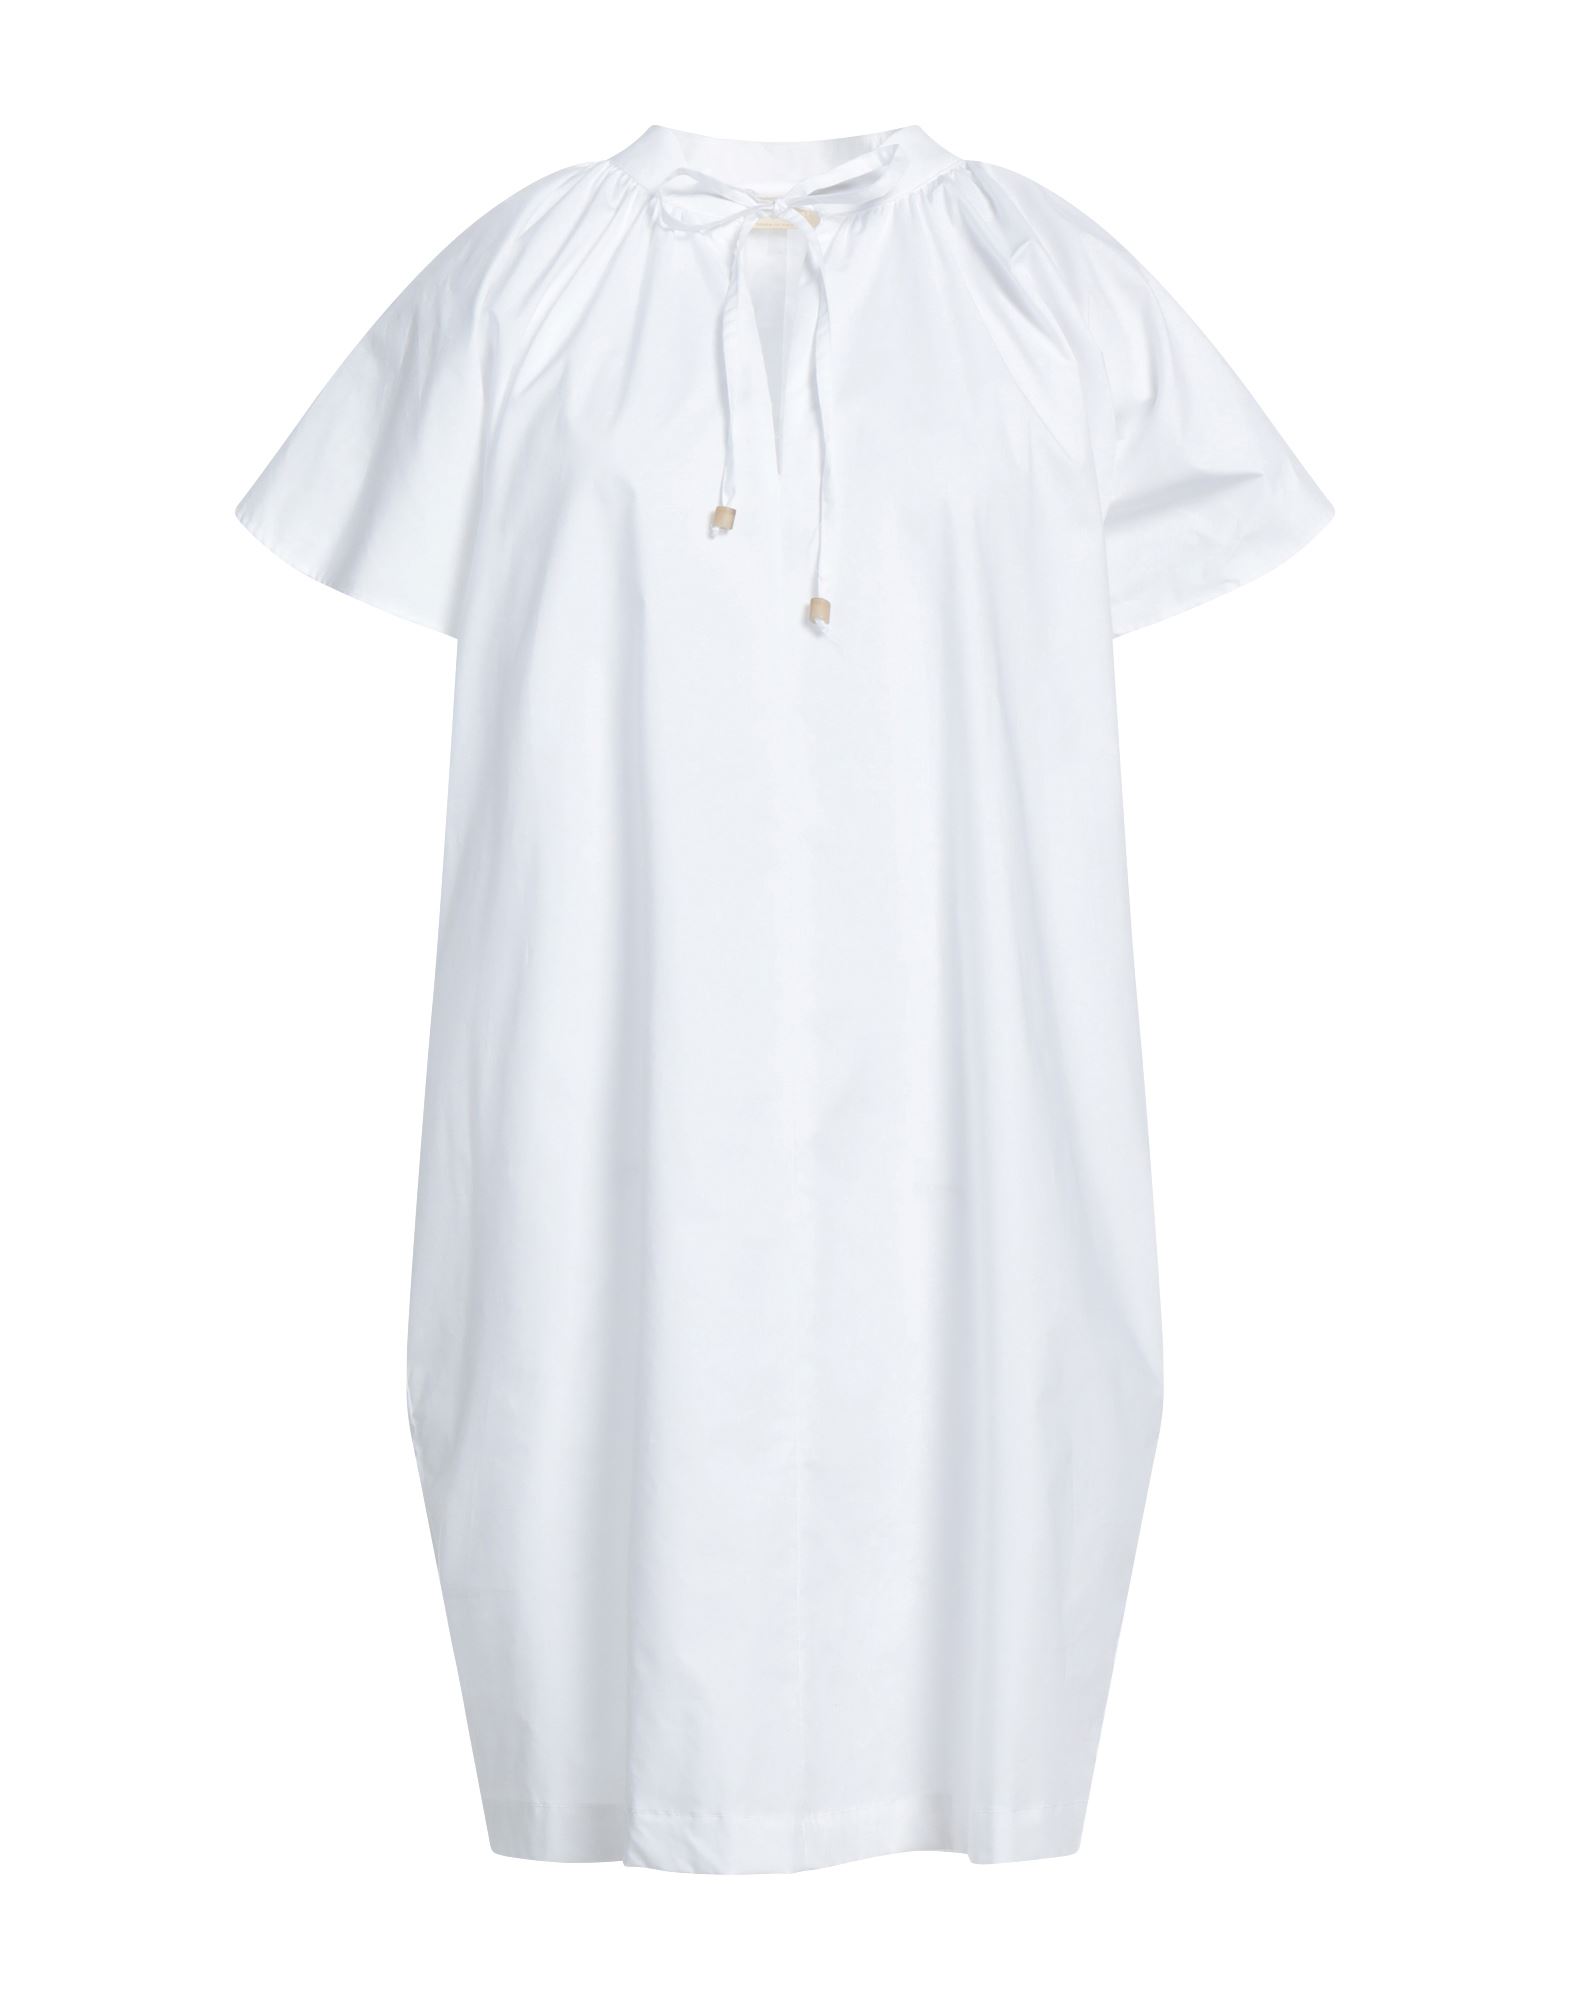 Momoní Woman Mini Dress White Size 8 Cotton